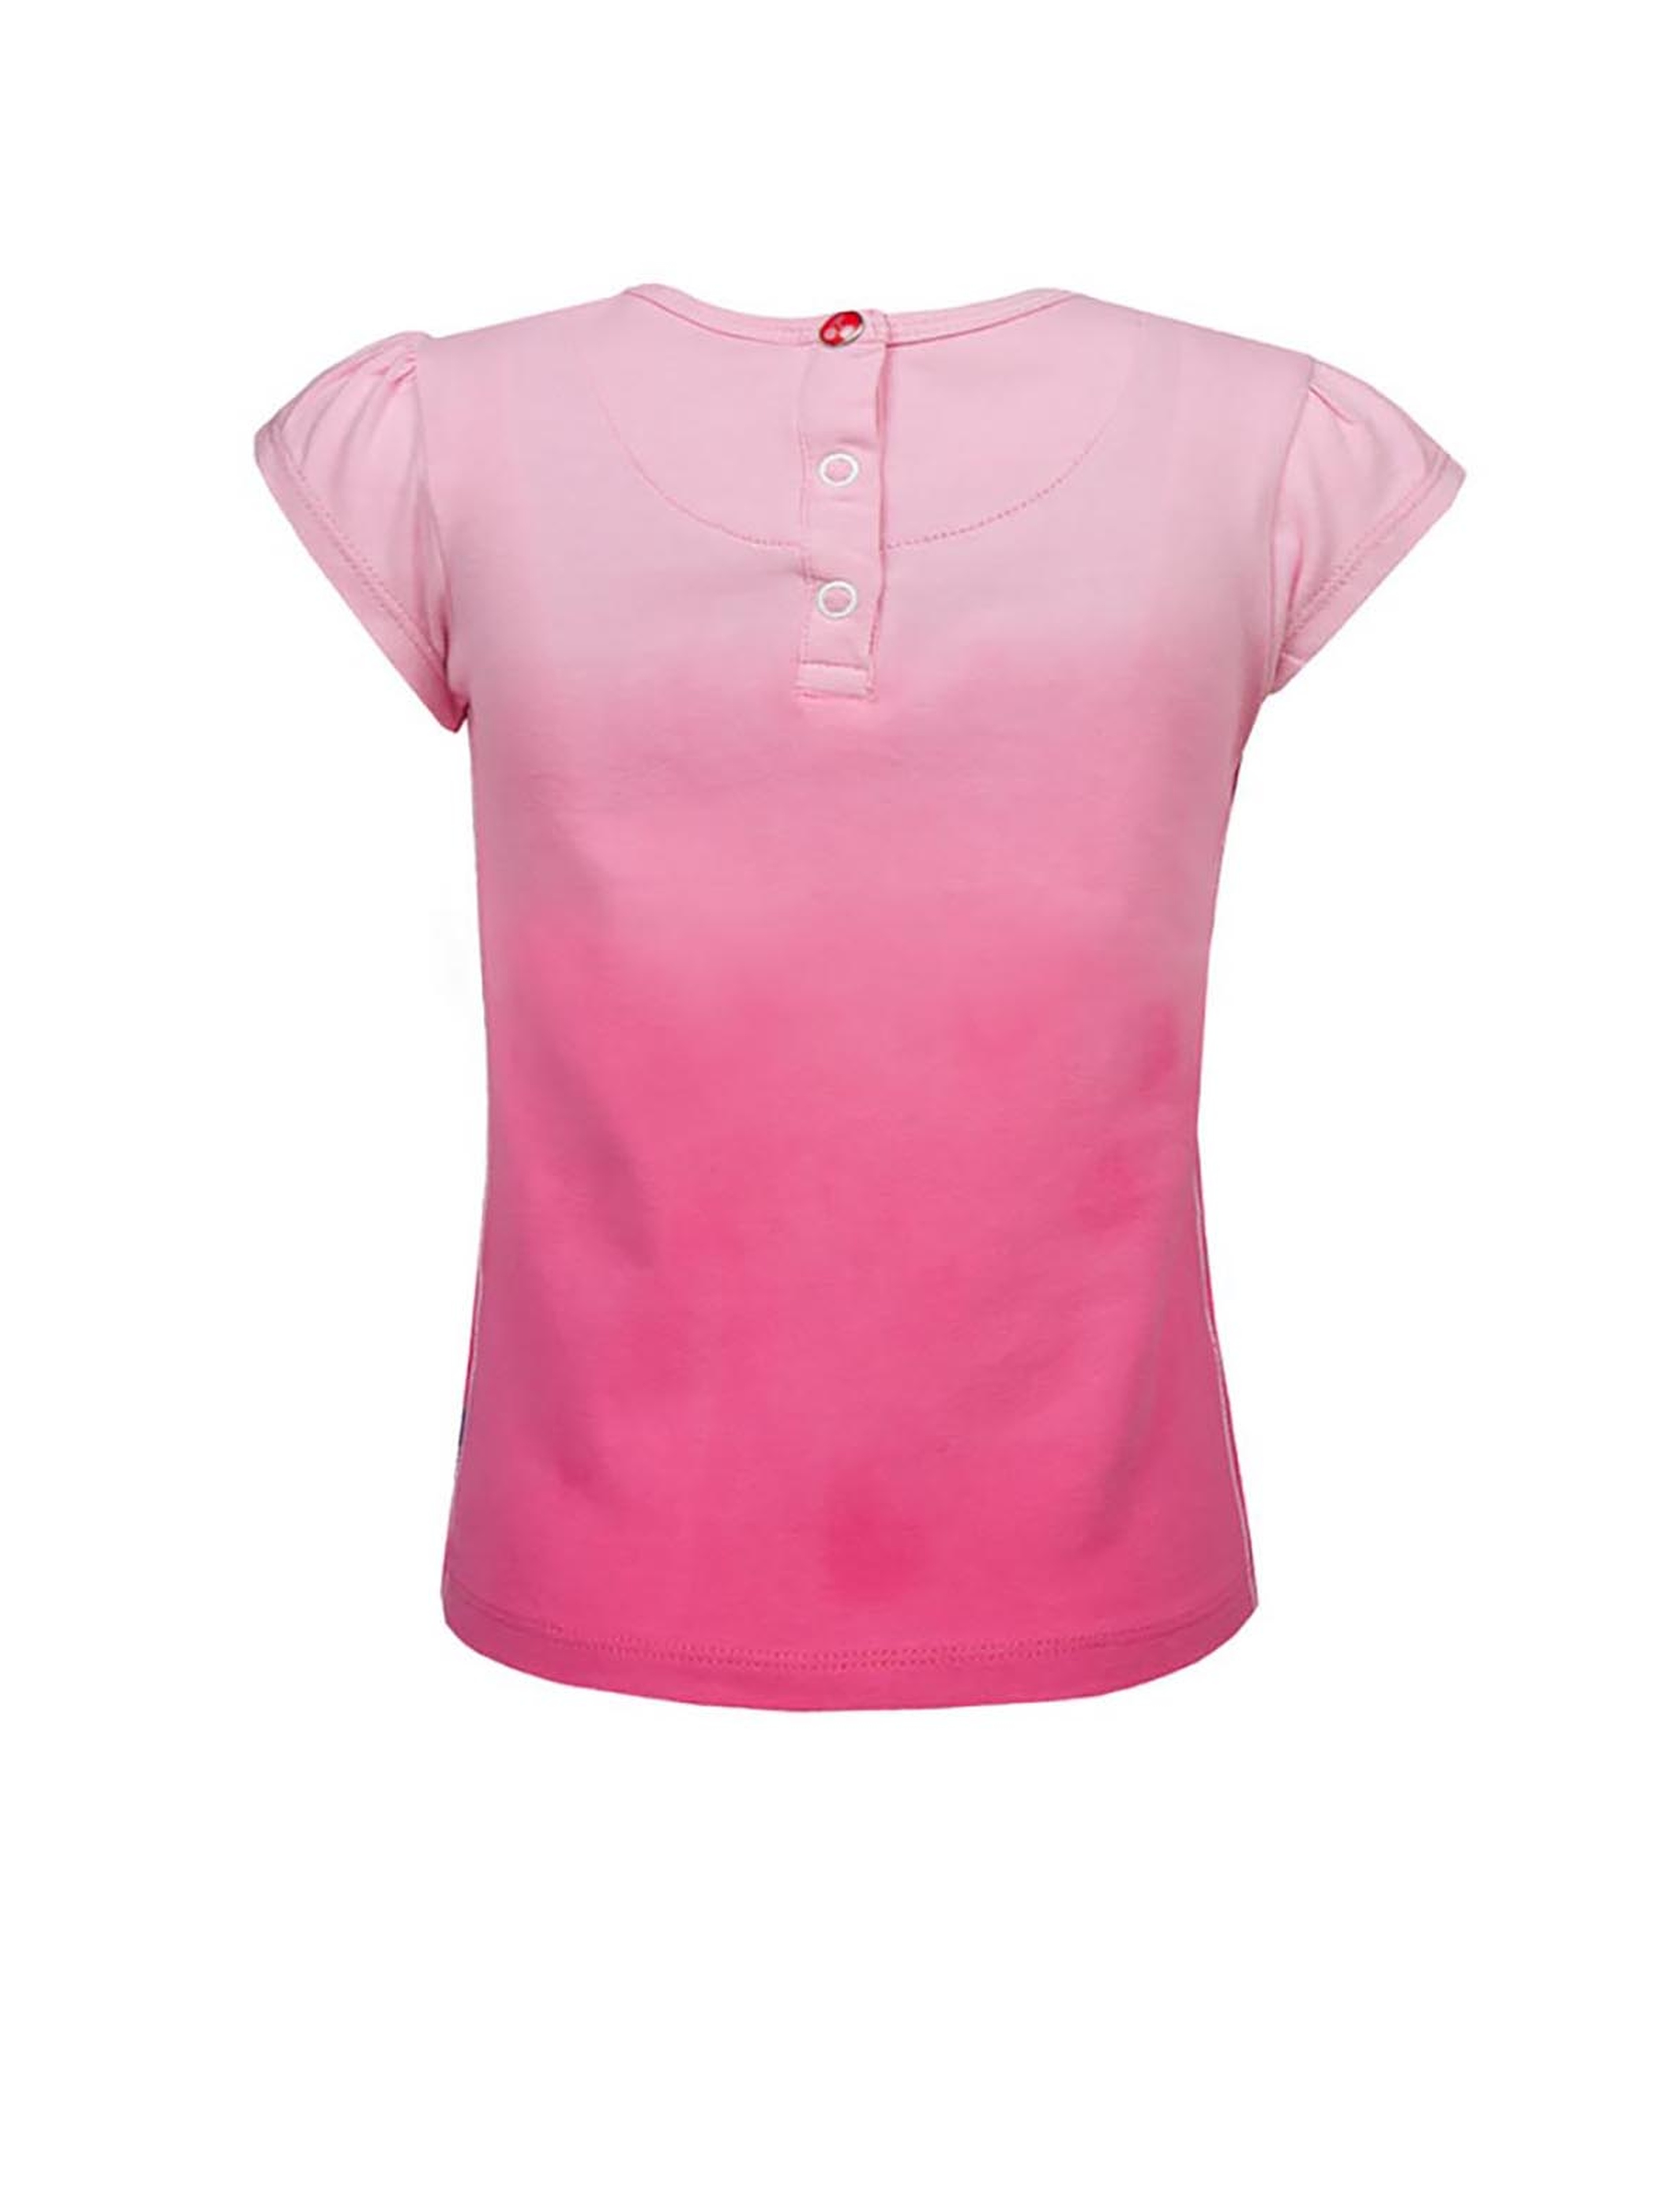 T-shirt niemowlęcy z wisienkami - różowy - Lief